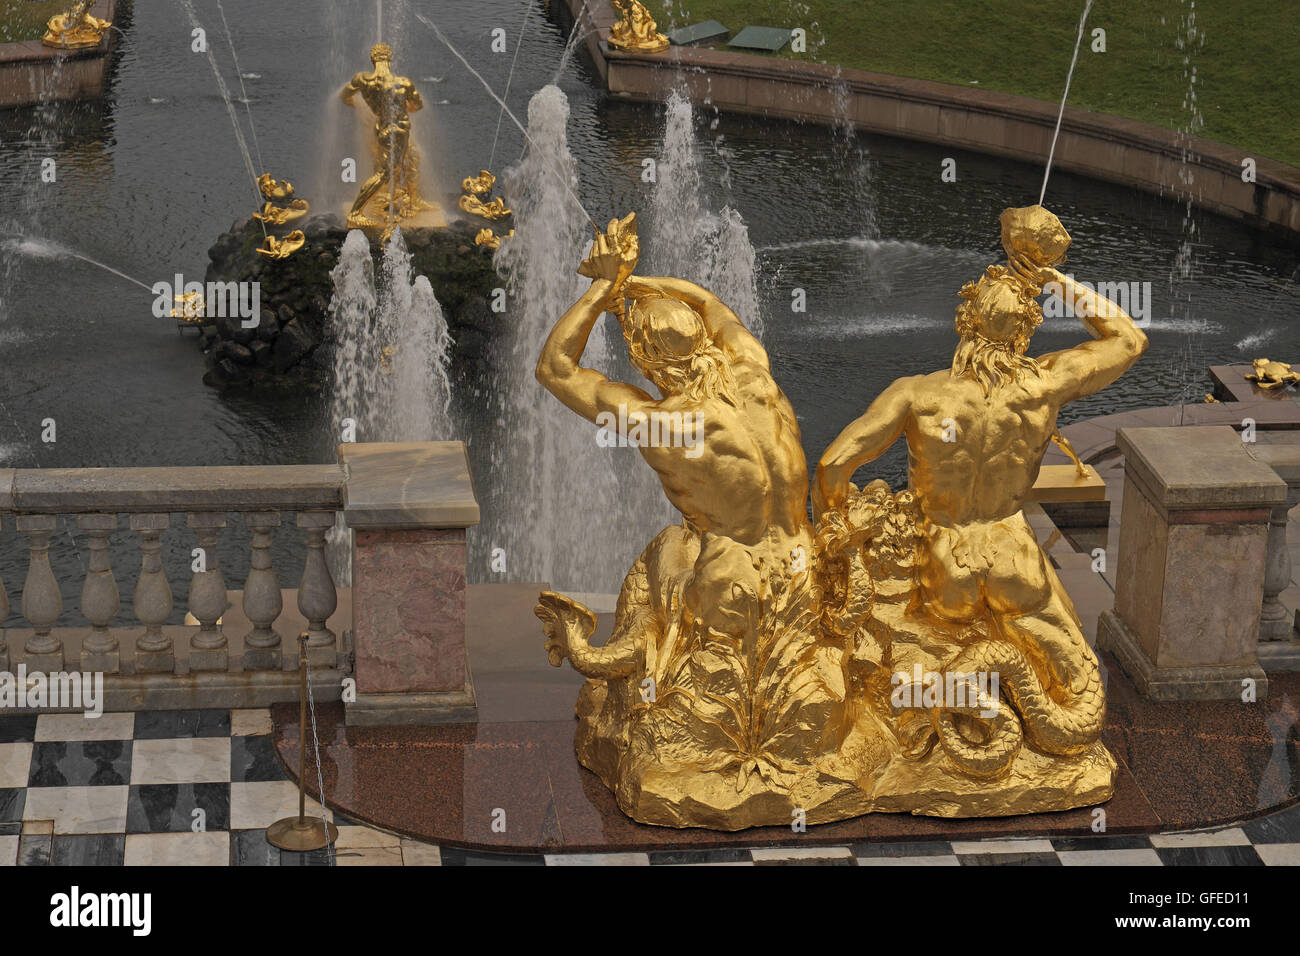 Détail de sculptures et fontaines vu de la terrasse, le Grand Palais de Peterhof, St Petersbourg, Russie. Banque D'Images